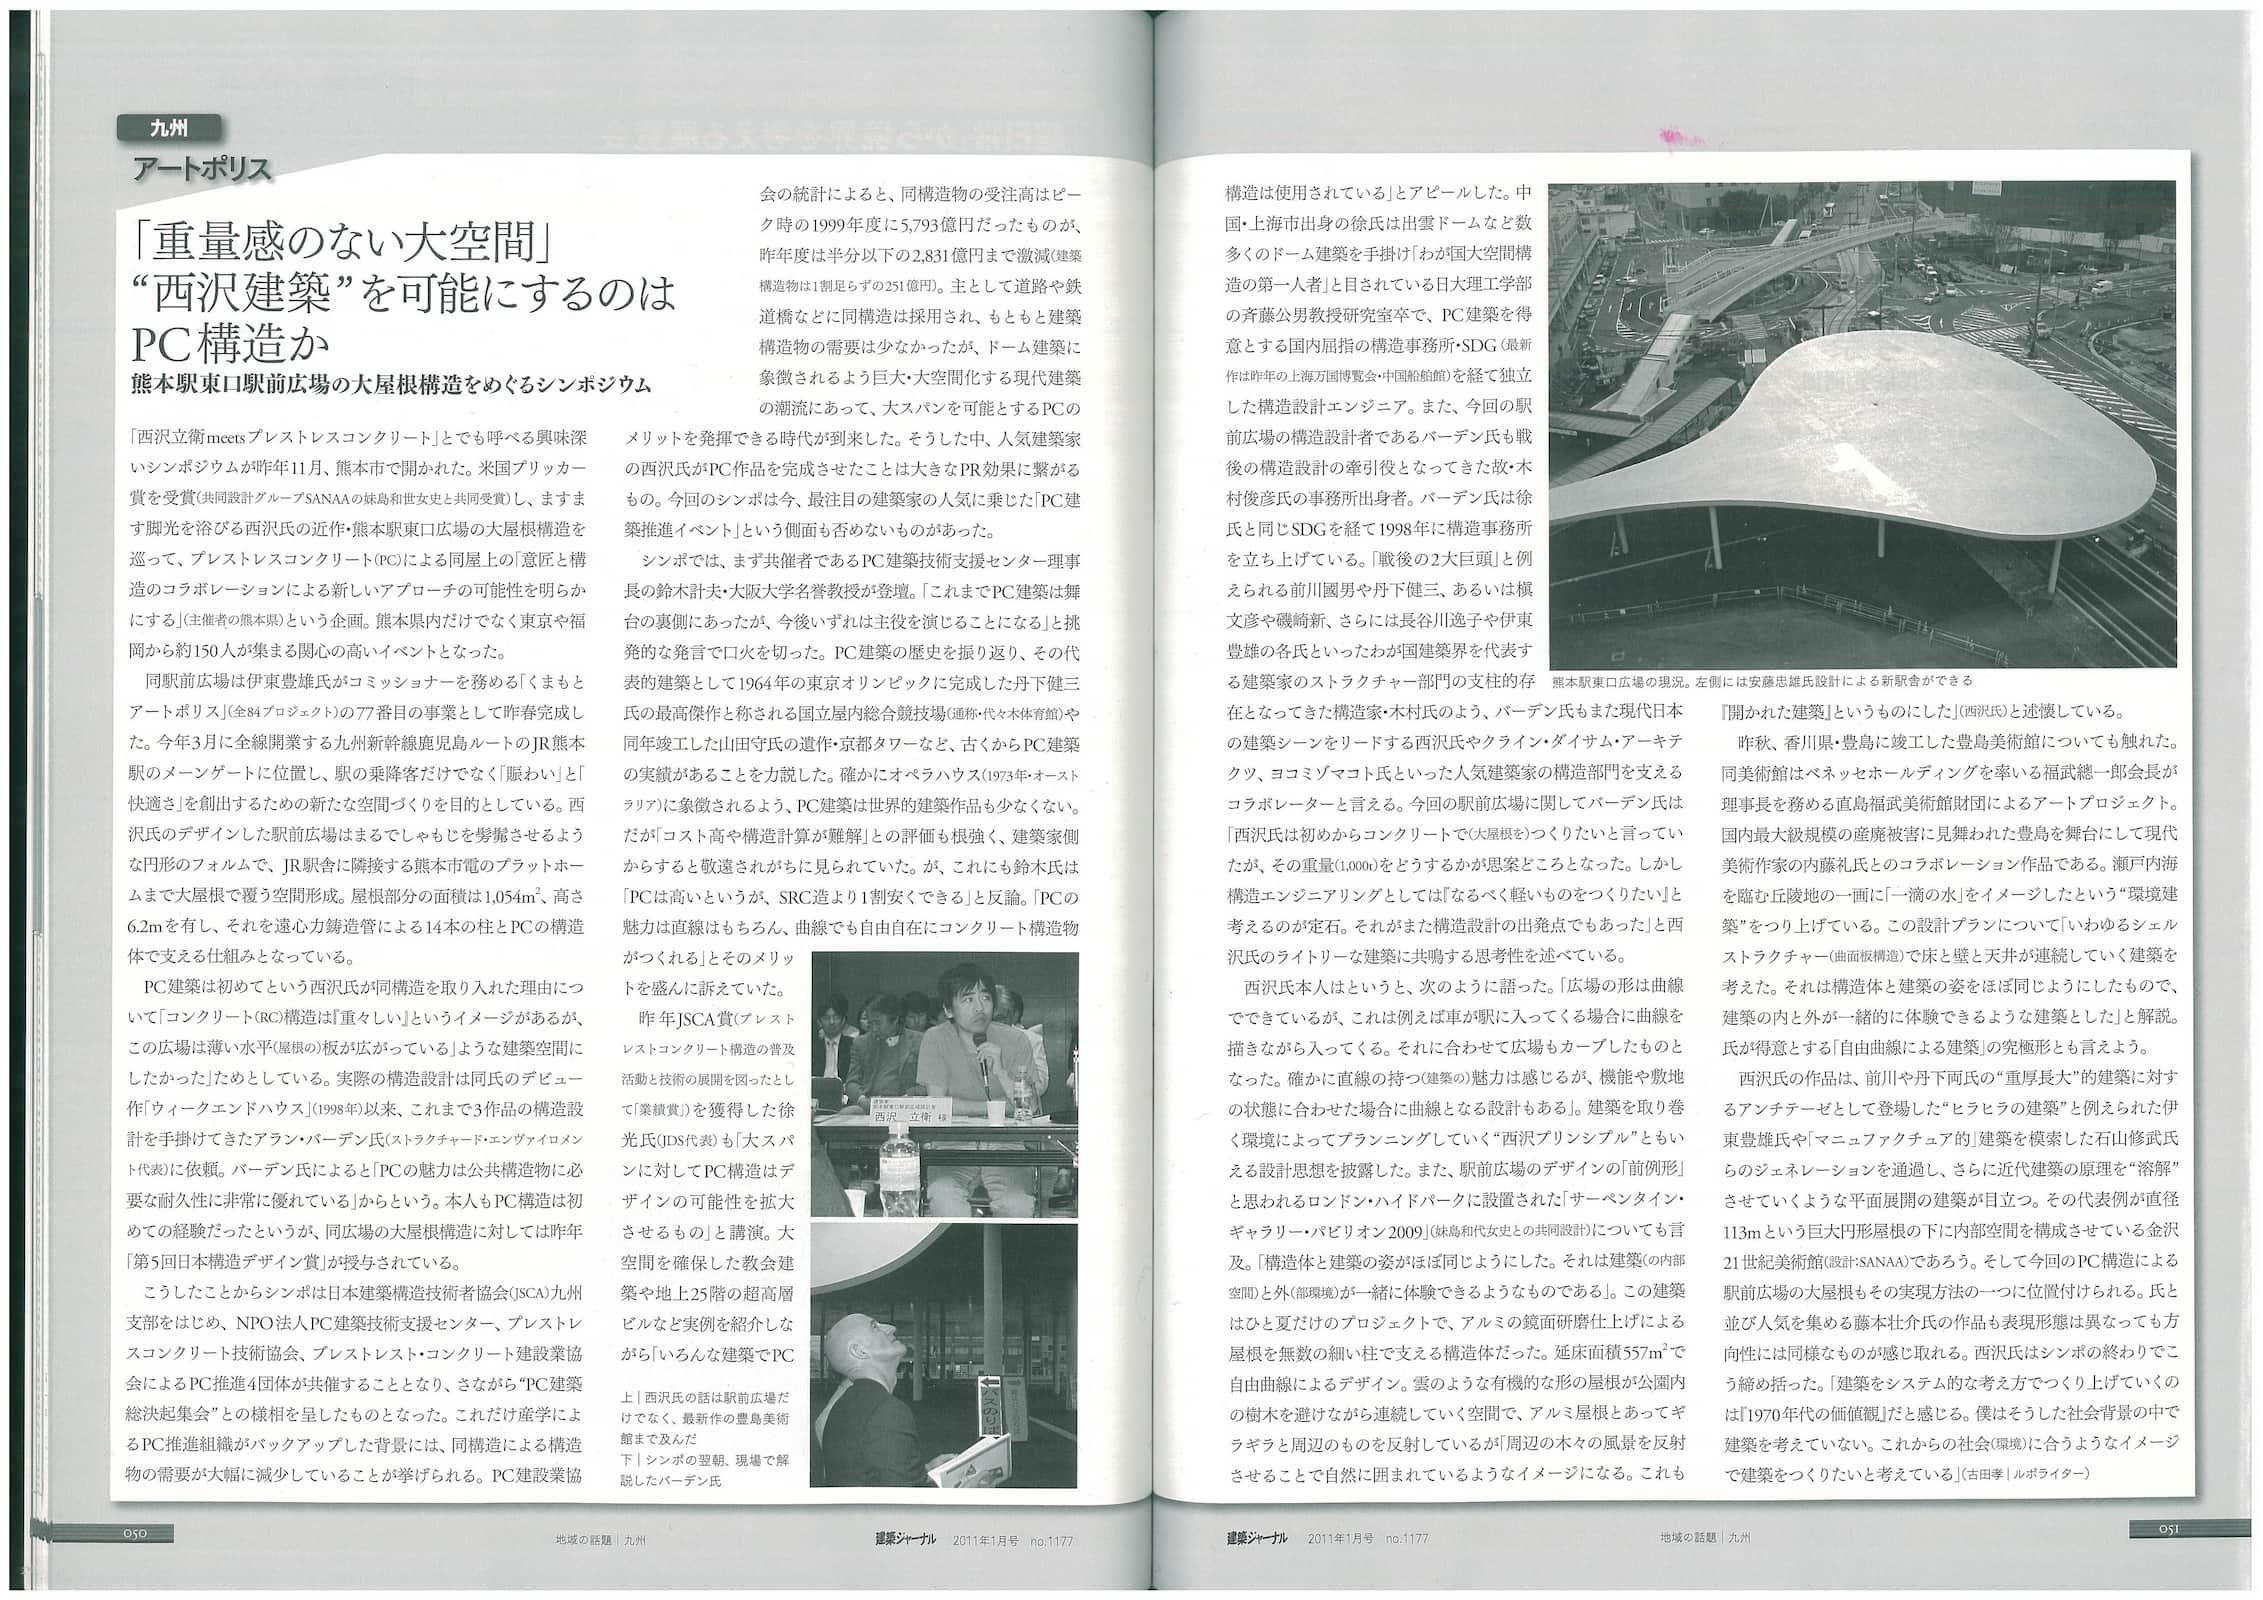 建築ジャーナル - Architectural Journal 1177_Page_2.jpg